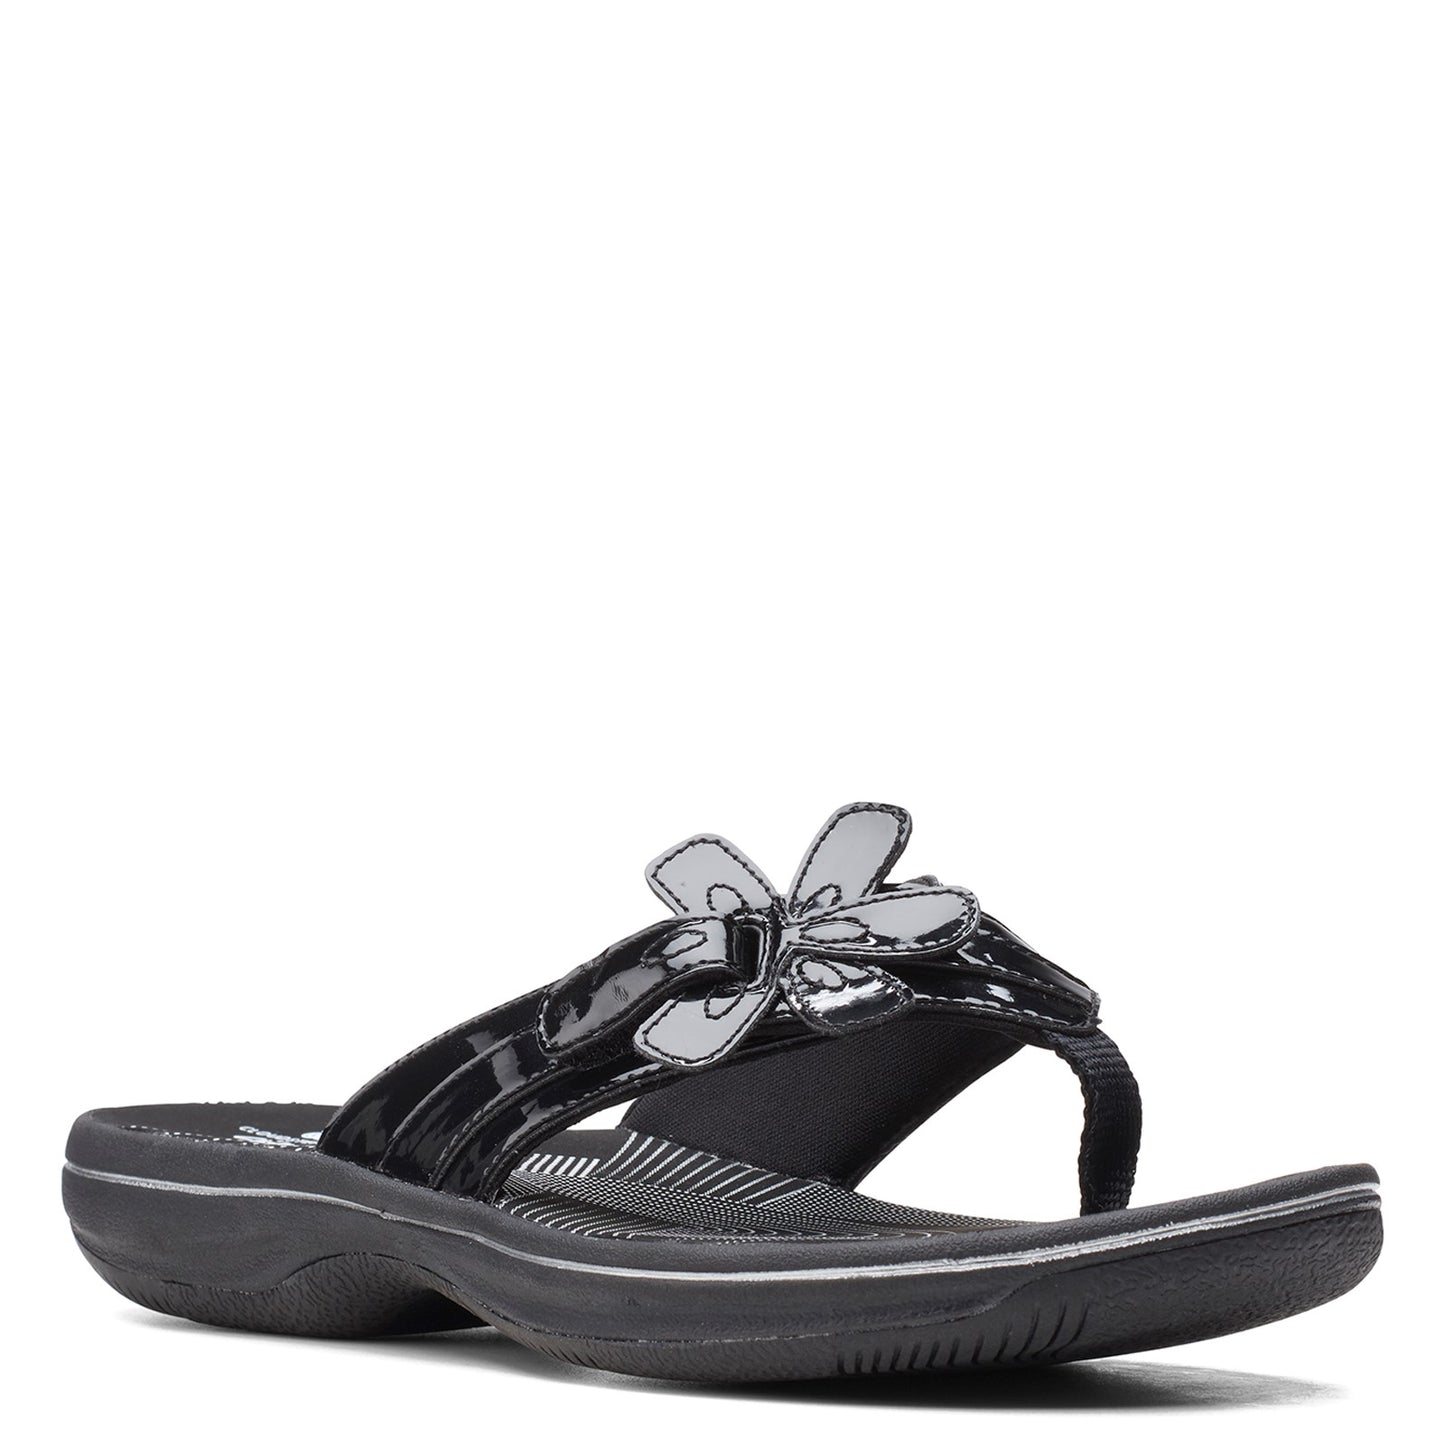 Peltz Shoes  Women's Clarks Brinkley Flora Sandal BLACK PATENT 26159852